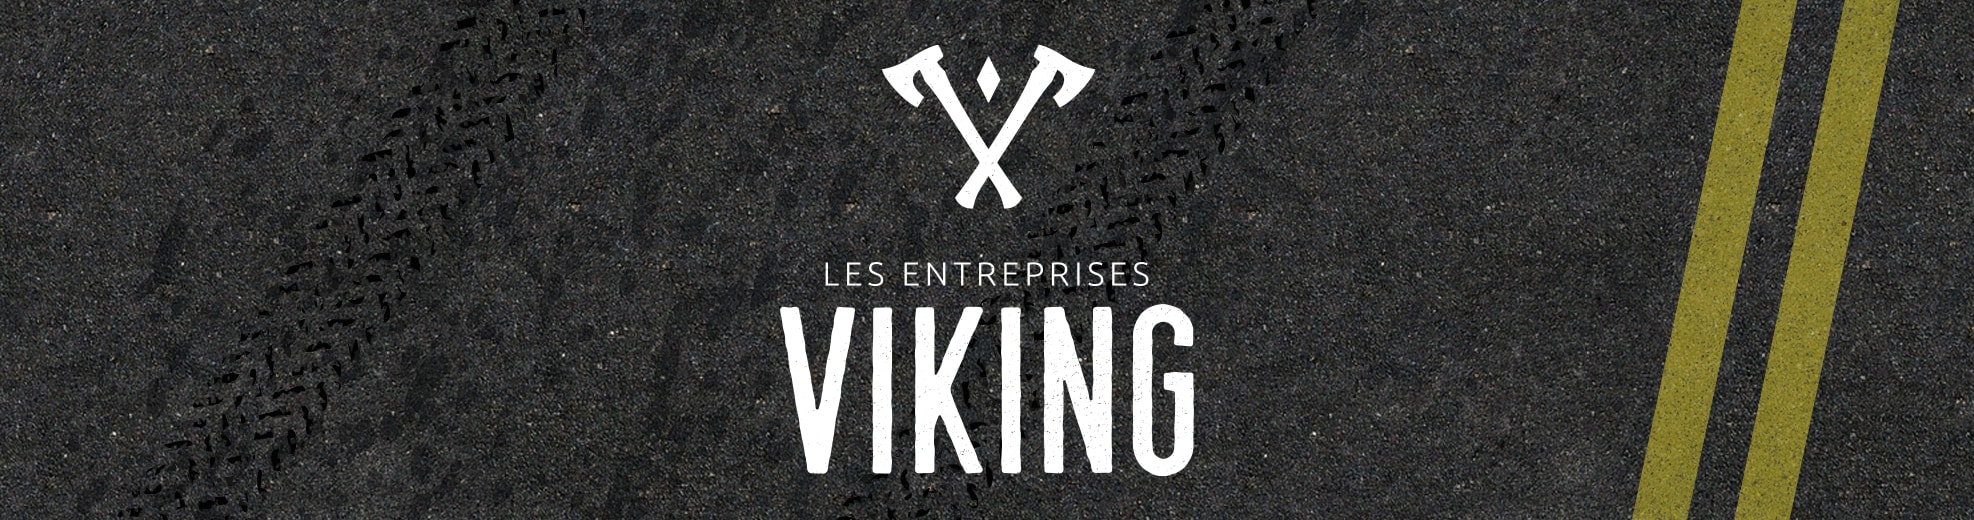 Identité visuelle - Les entreprises Viking